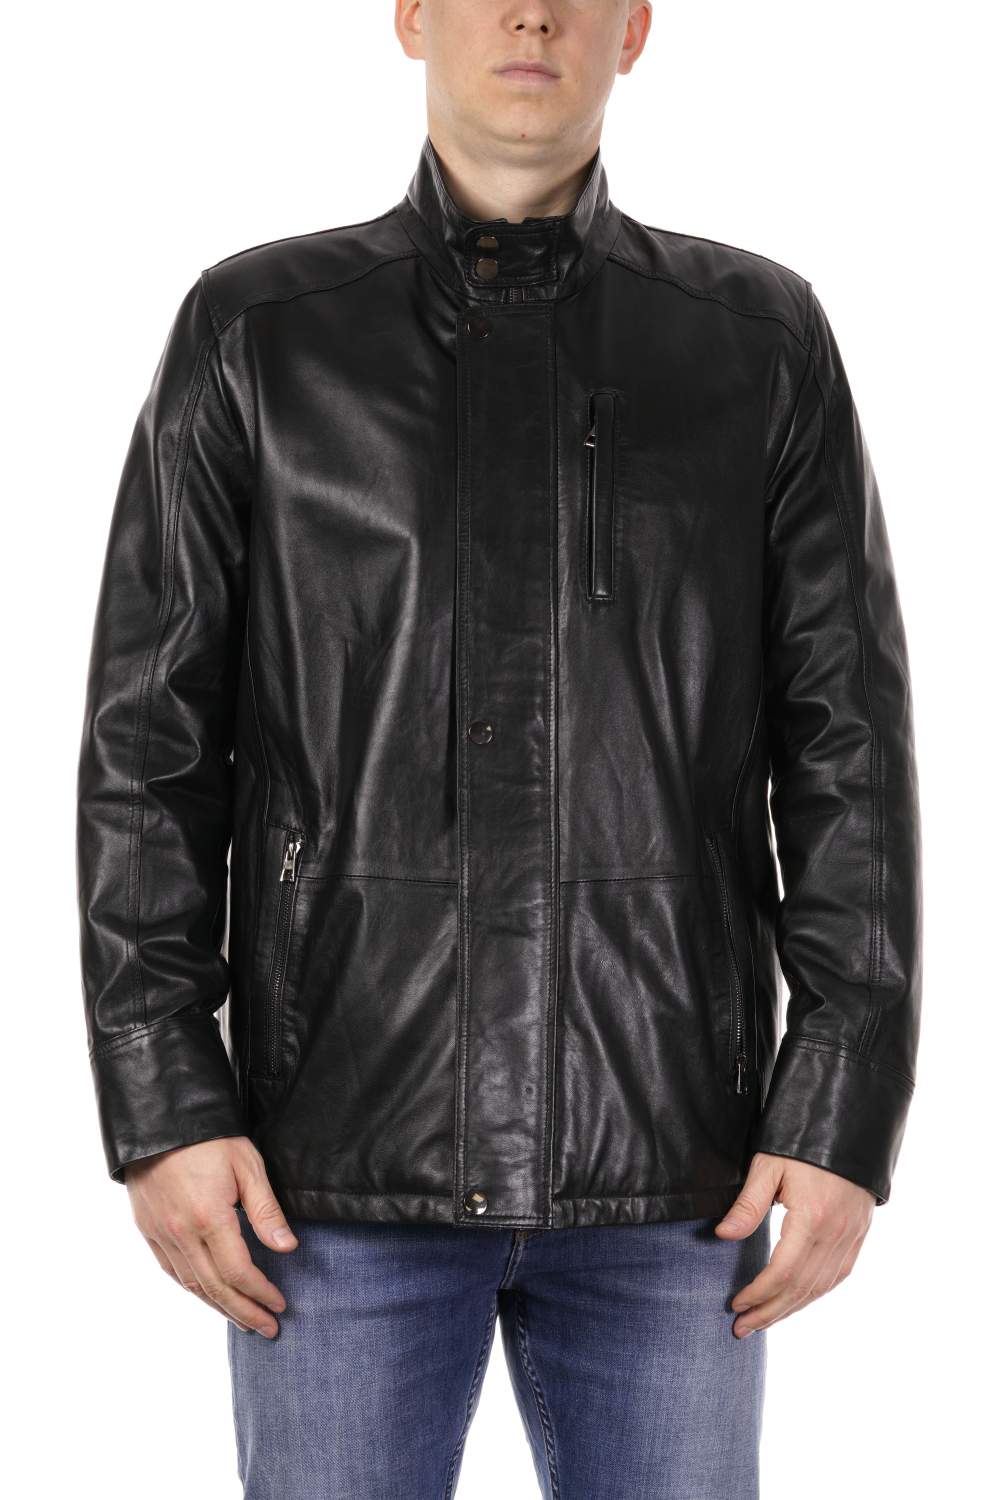 Мужские кожаные куртки больших размеров PDONNA - купить в Москве - Мегамаркет